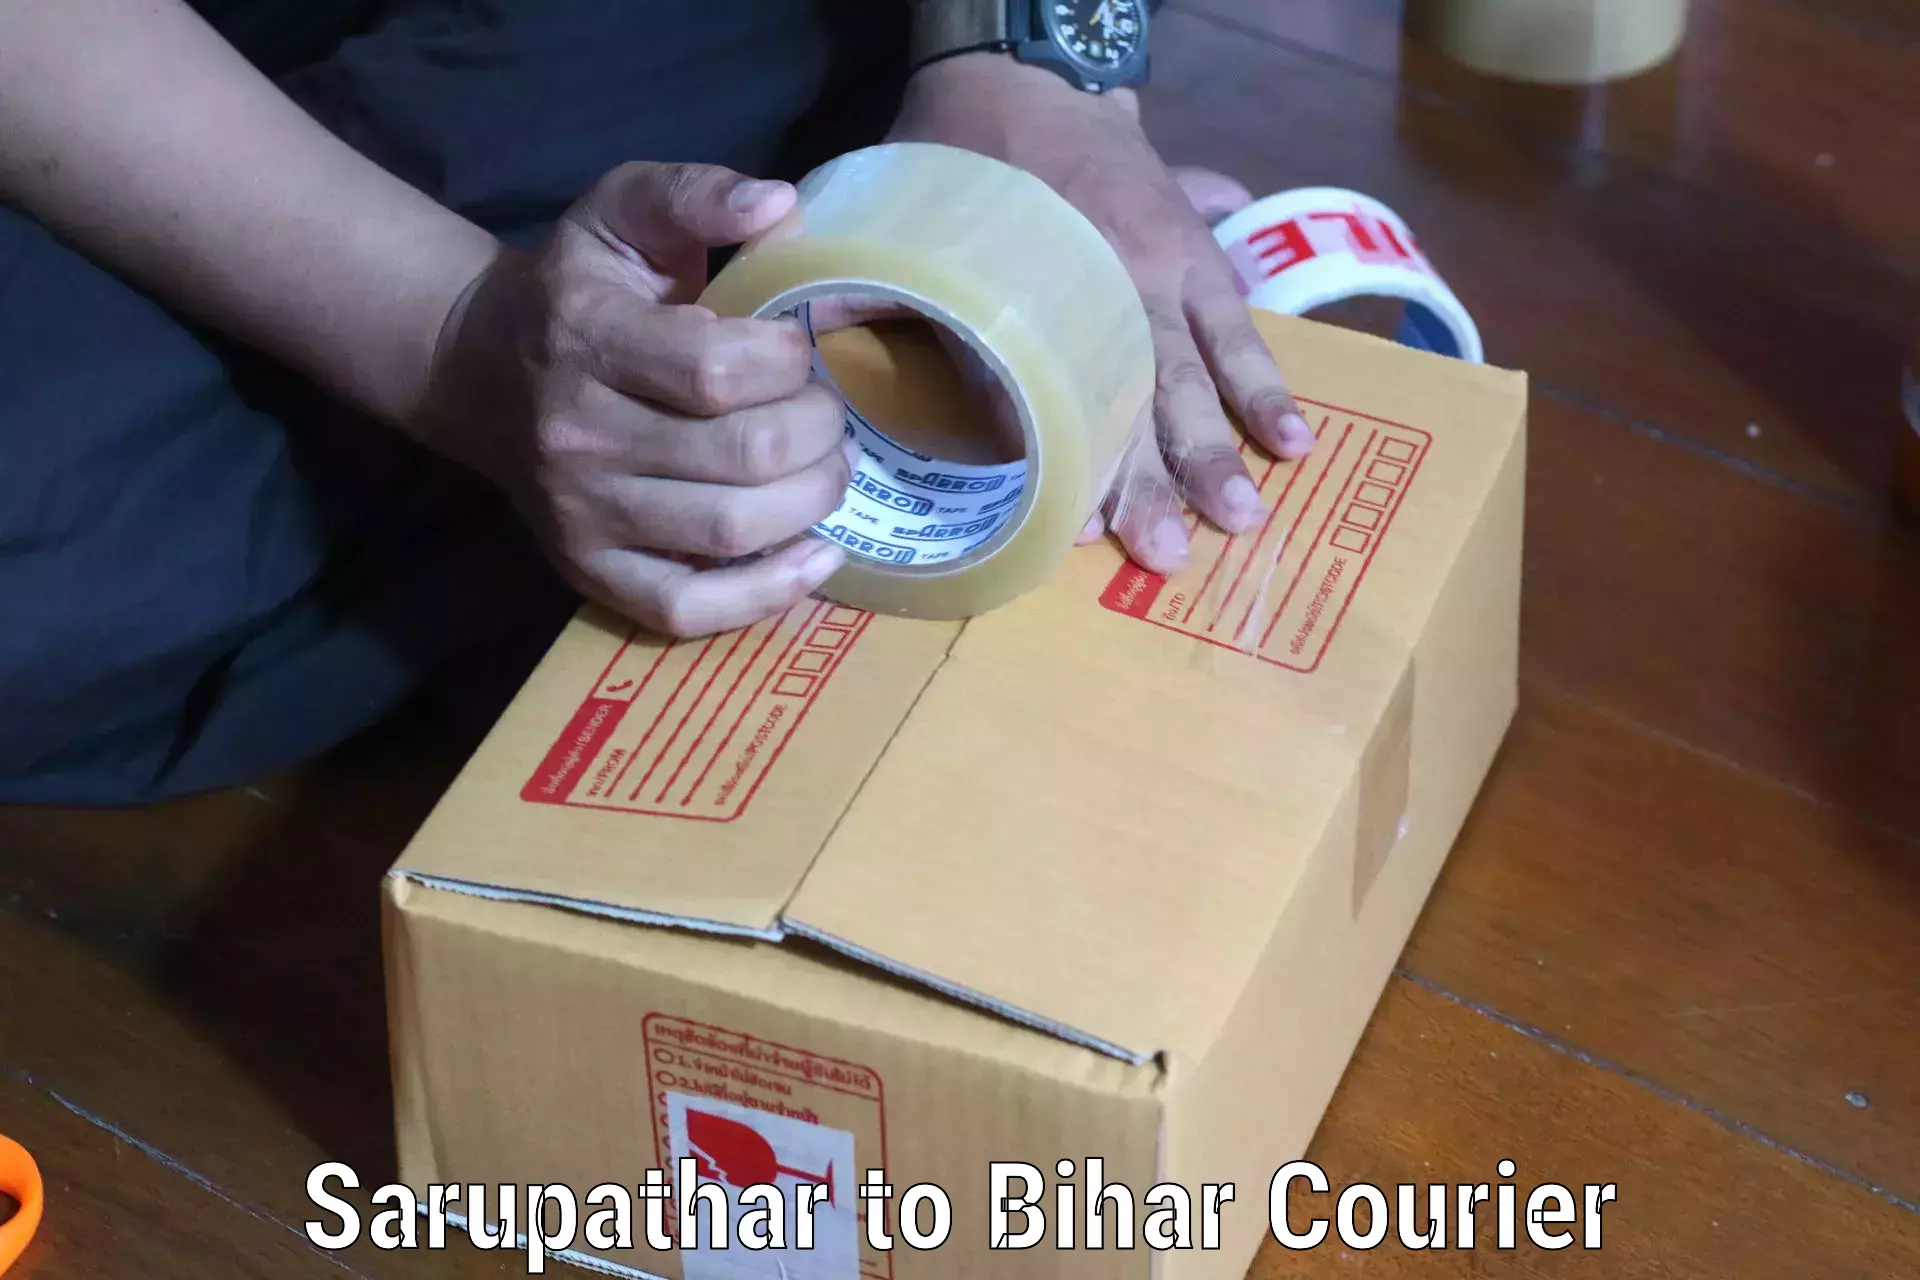 Courier service comparison Sarupathar to Bikramganj